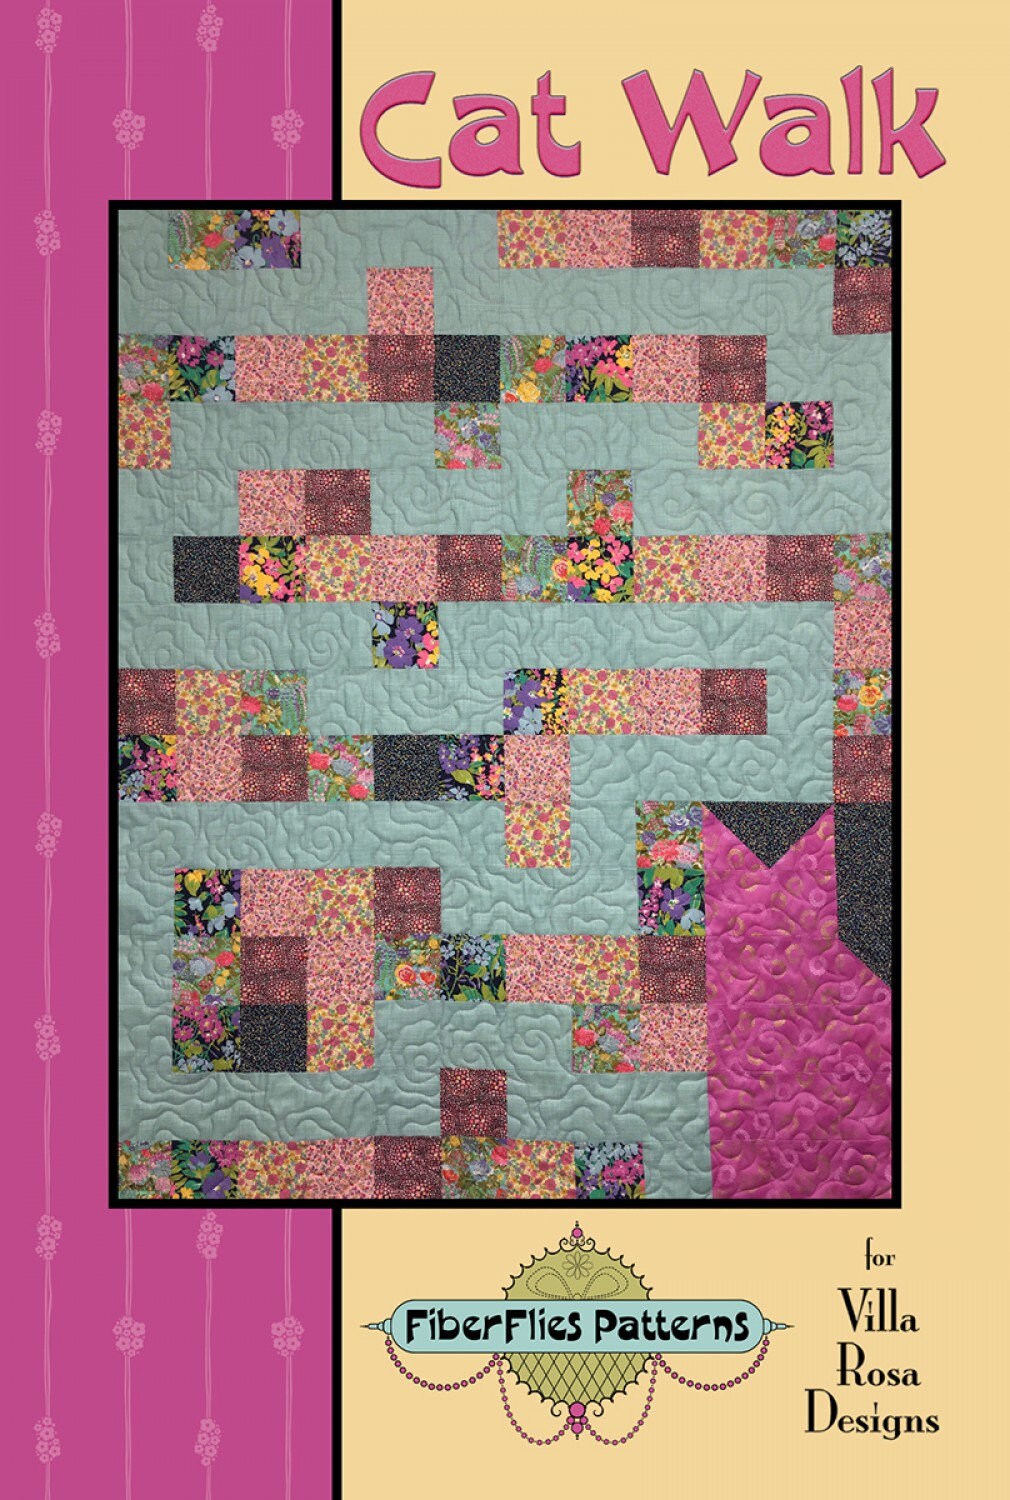 Cat Walk Quilt Pattern - 42” x 53” - Villa Rosa  Designs - Nancy Aitken - Fiber Flies Patterns